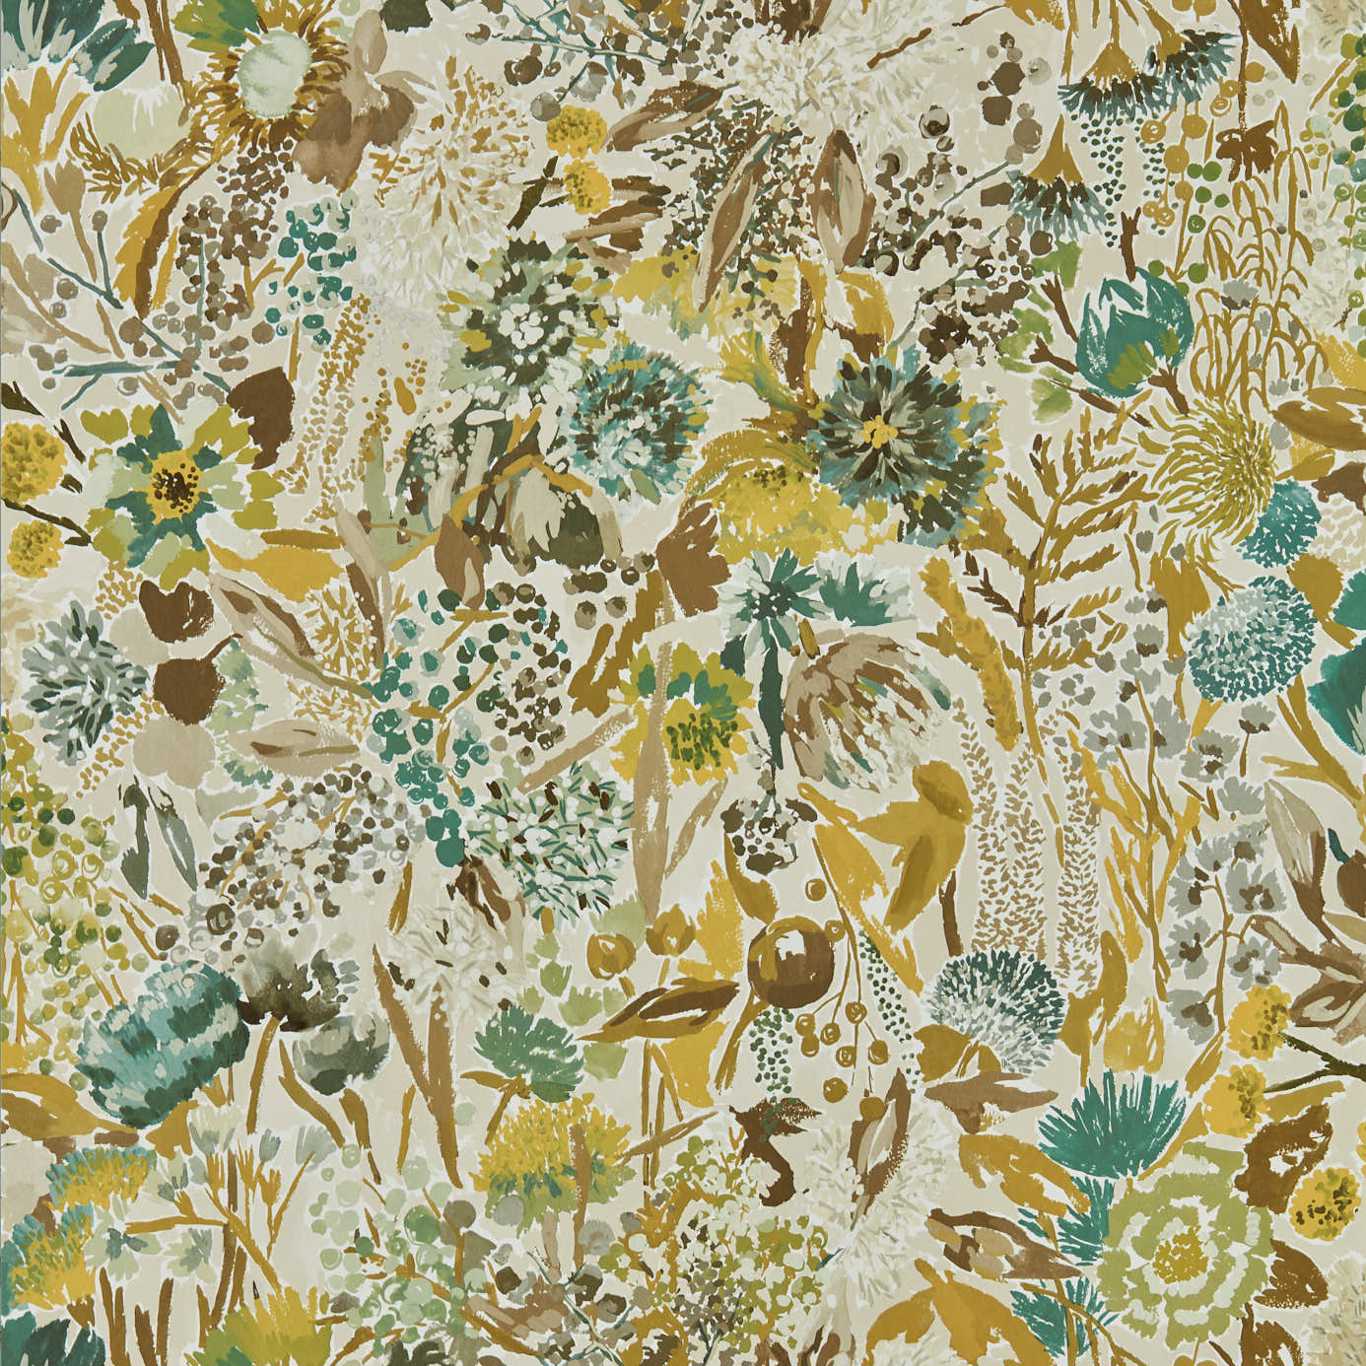 Sanguine Succulent/Seaglass/Nectar/Sail Cloth Wallpaper by HAR